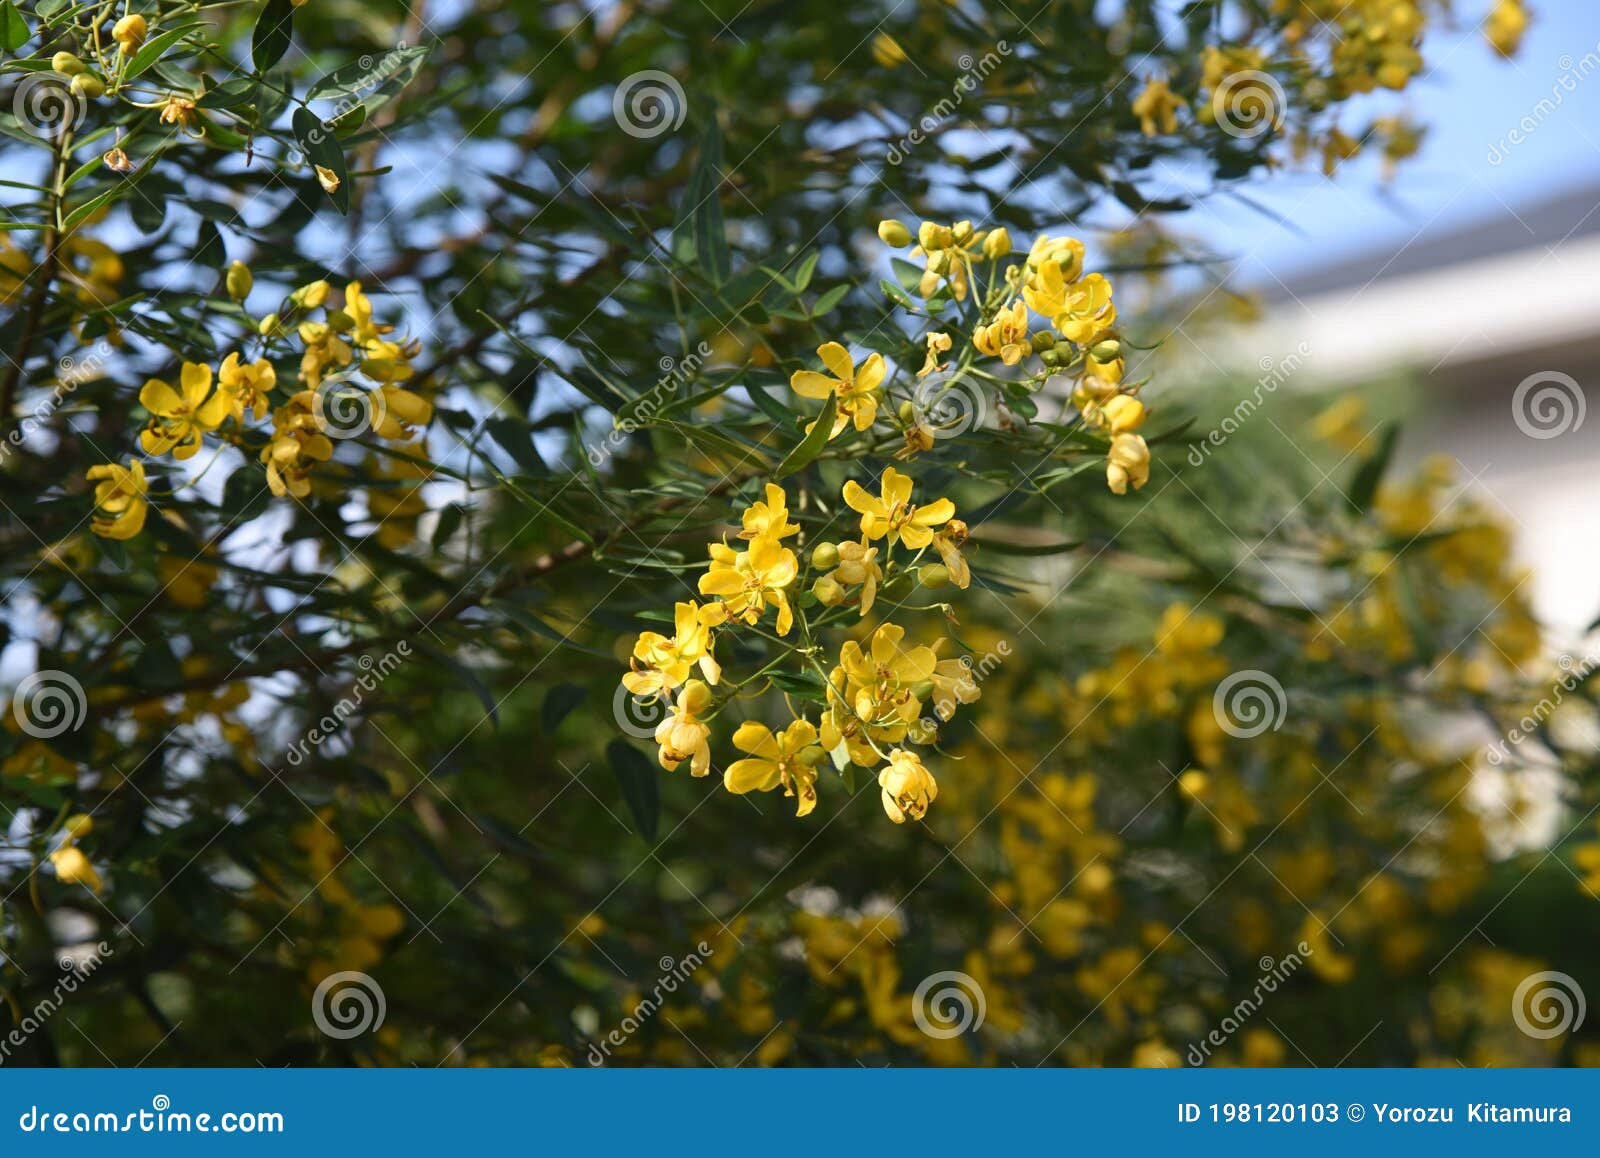 セナコリモサバターカップブッシュの花 Stock Image Image Of Evergreen Argentine